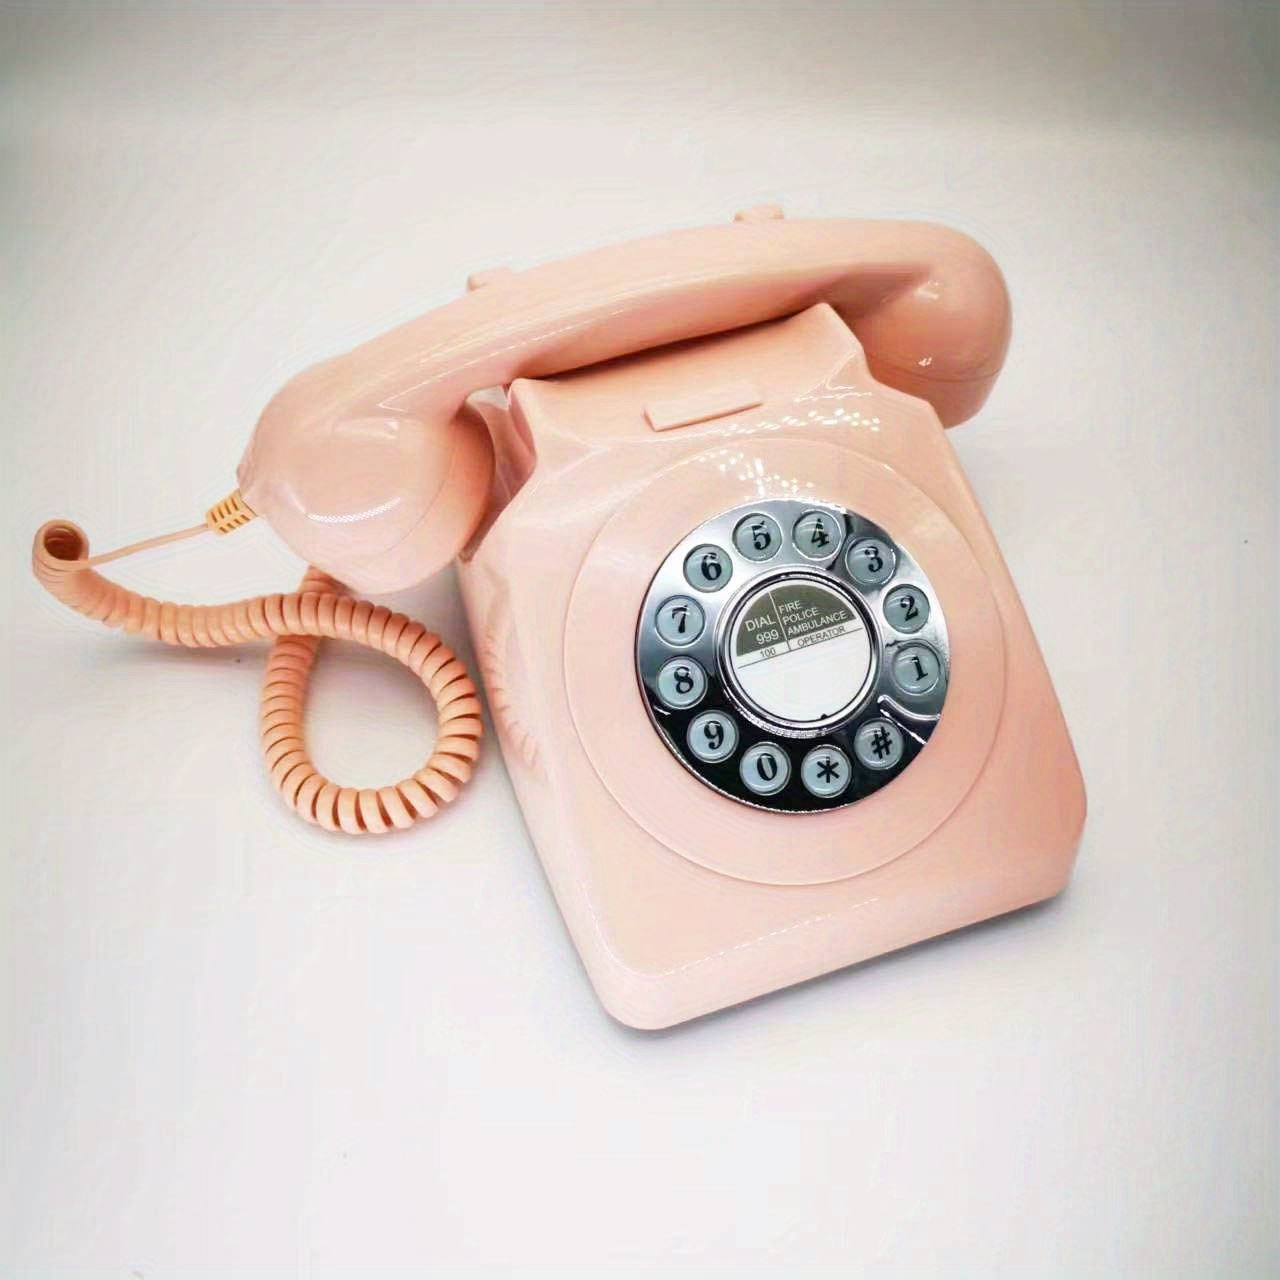 Teléfonos antiguos para teléfono fijo moda hogar creativo teléfono fijo  europeo americano retro teléfono antiguo moda teléfonos caseros